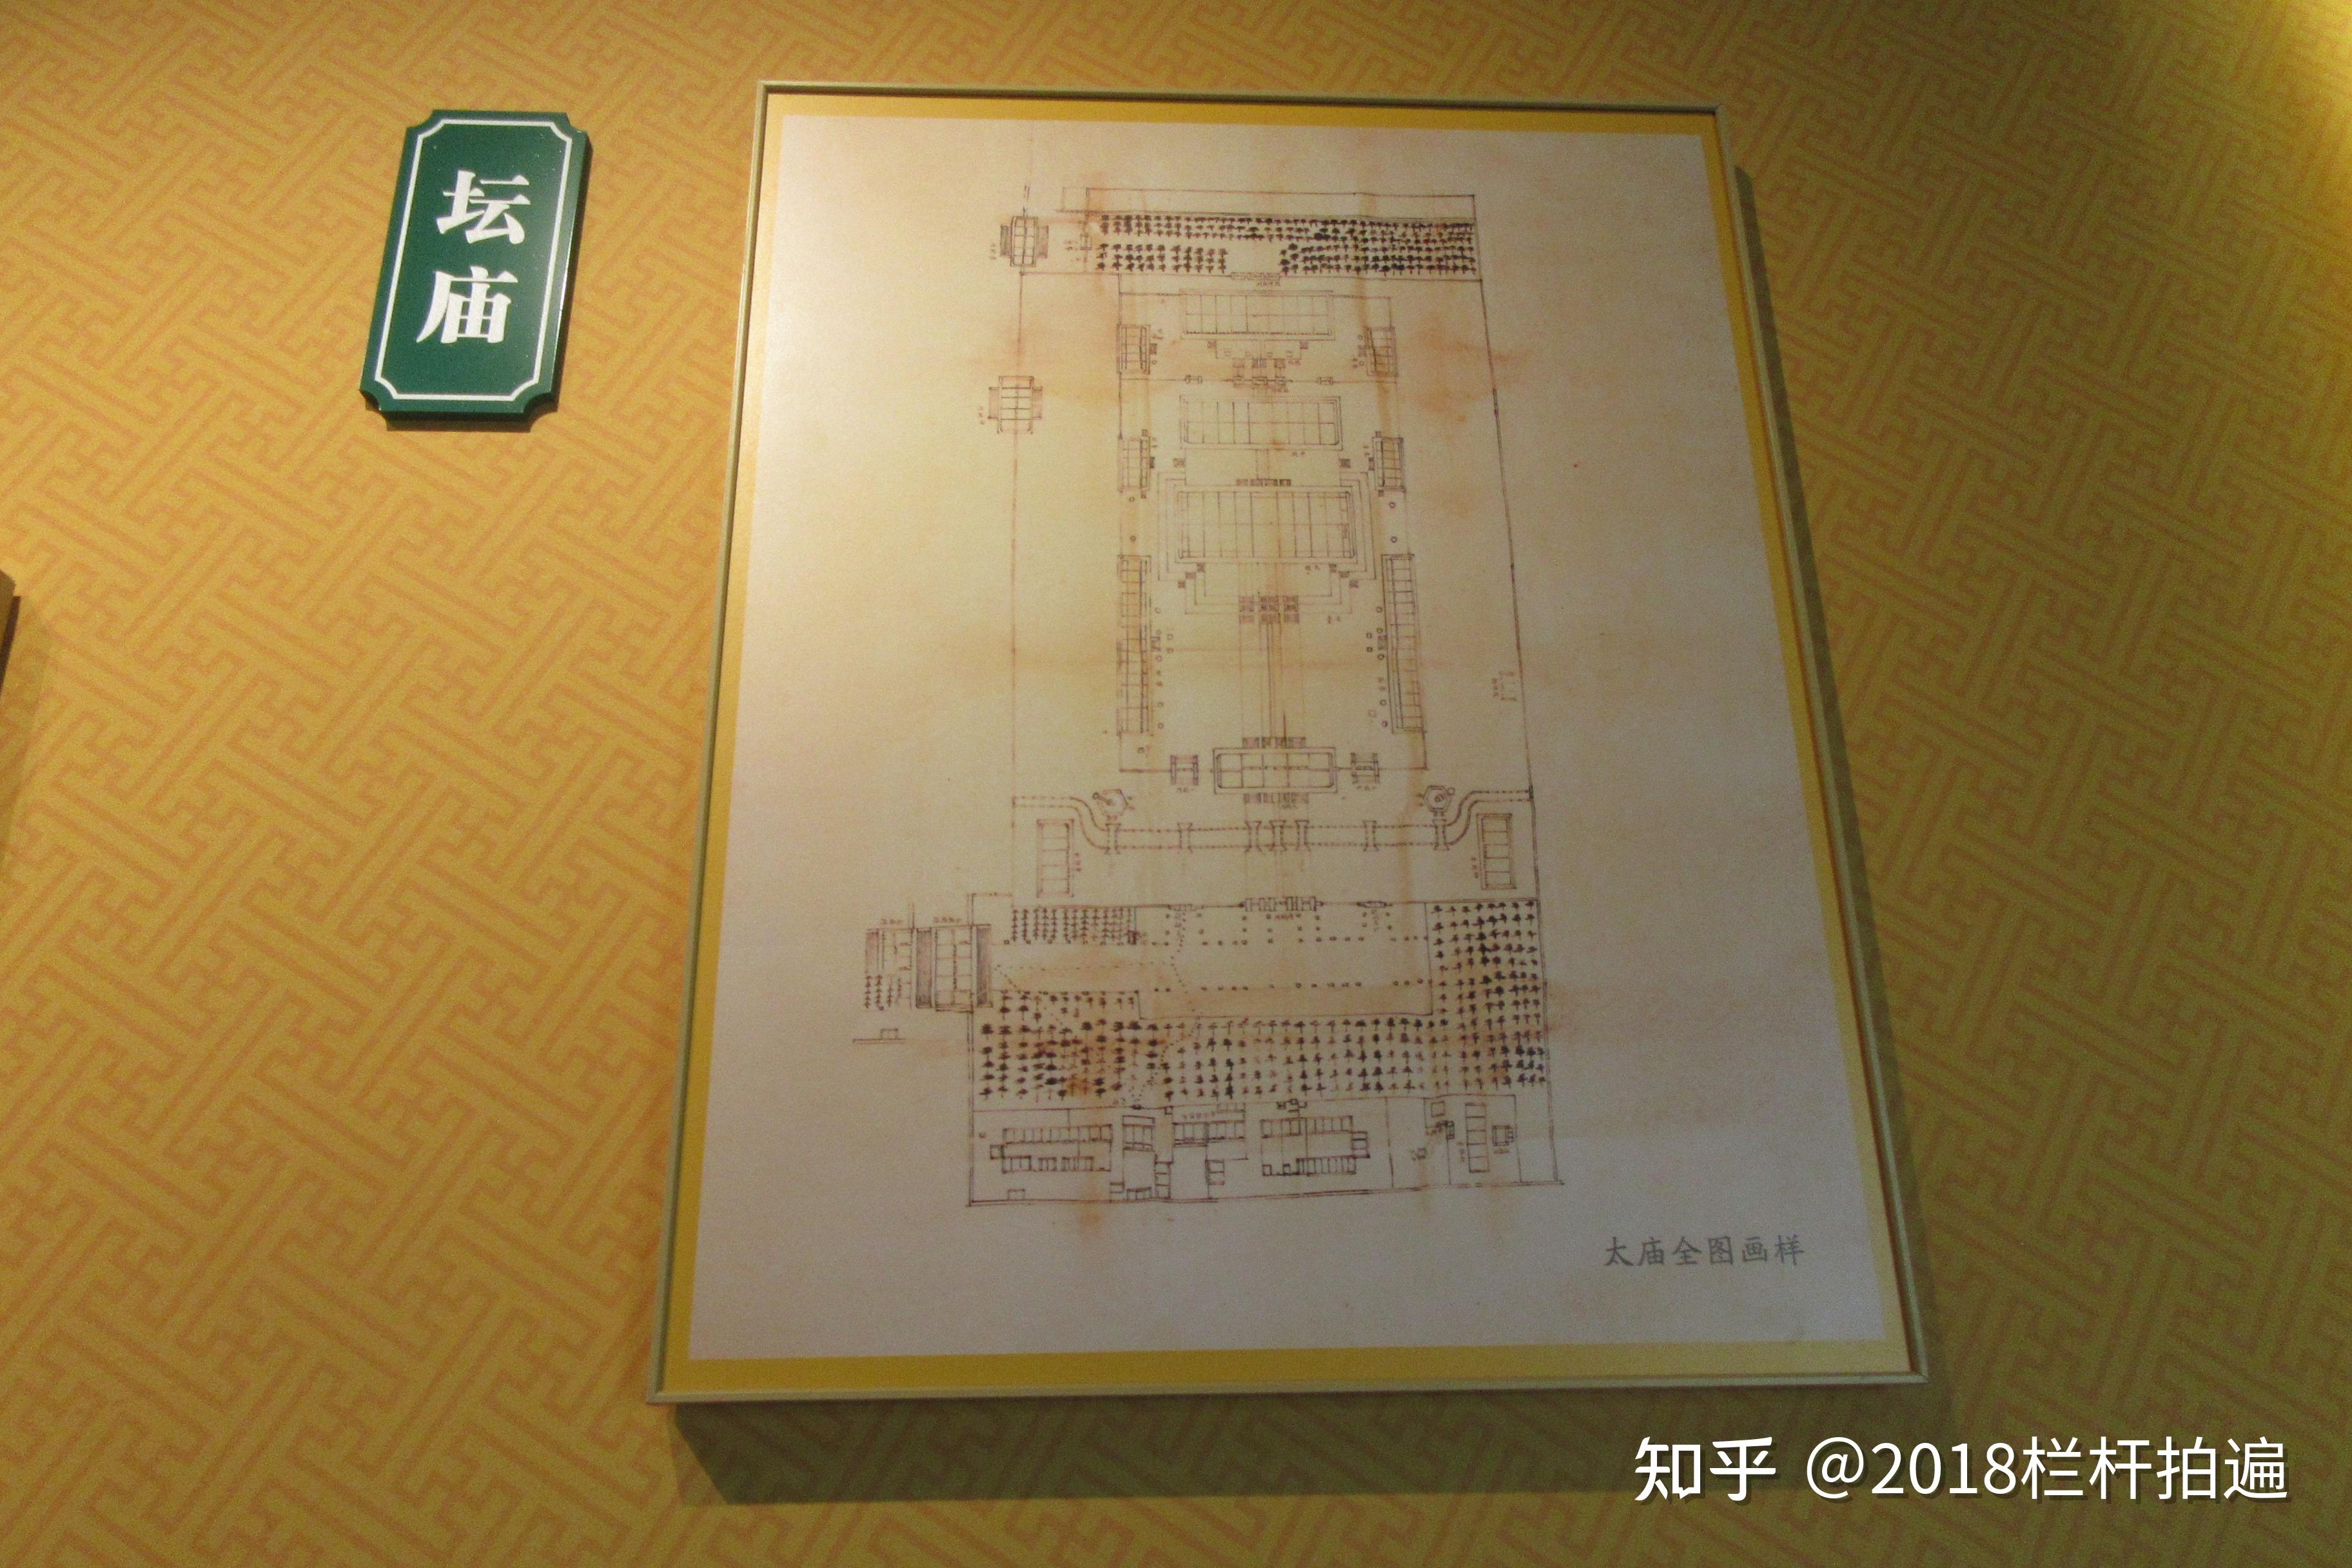 北京:团河行宫《样式雷专题展》